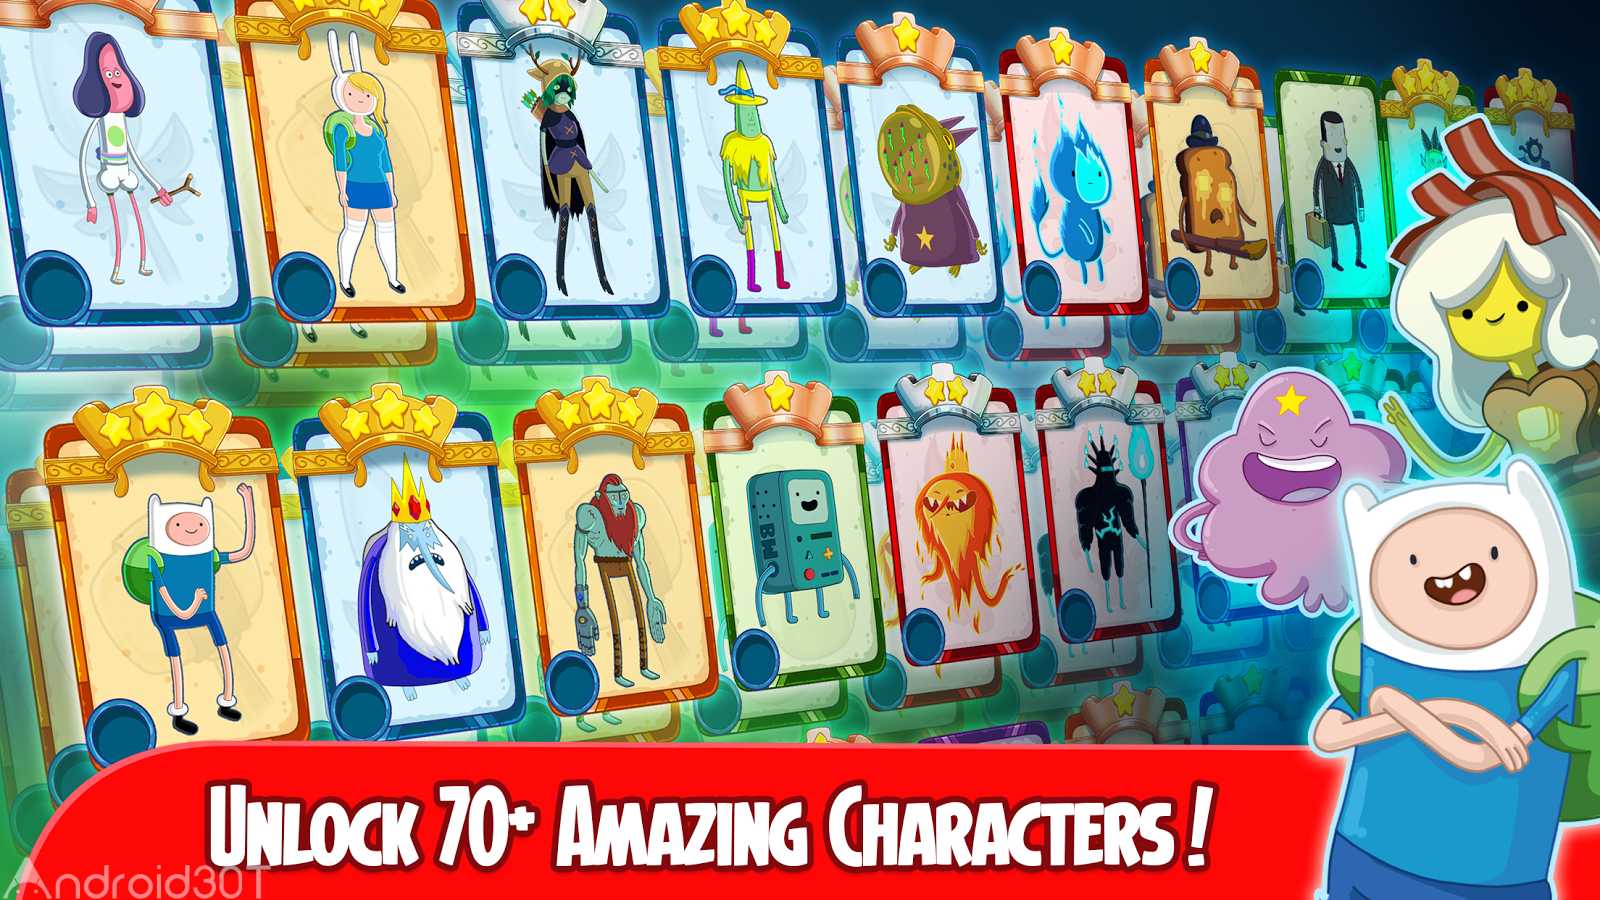 دانلود Champions and Challengers – Adventure Time 2.0.1 – بازی تایم ماجراجویی اندروید